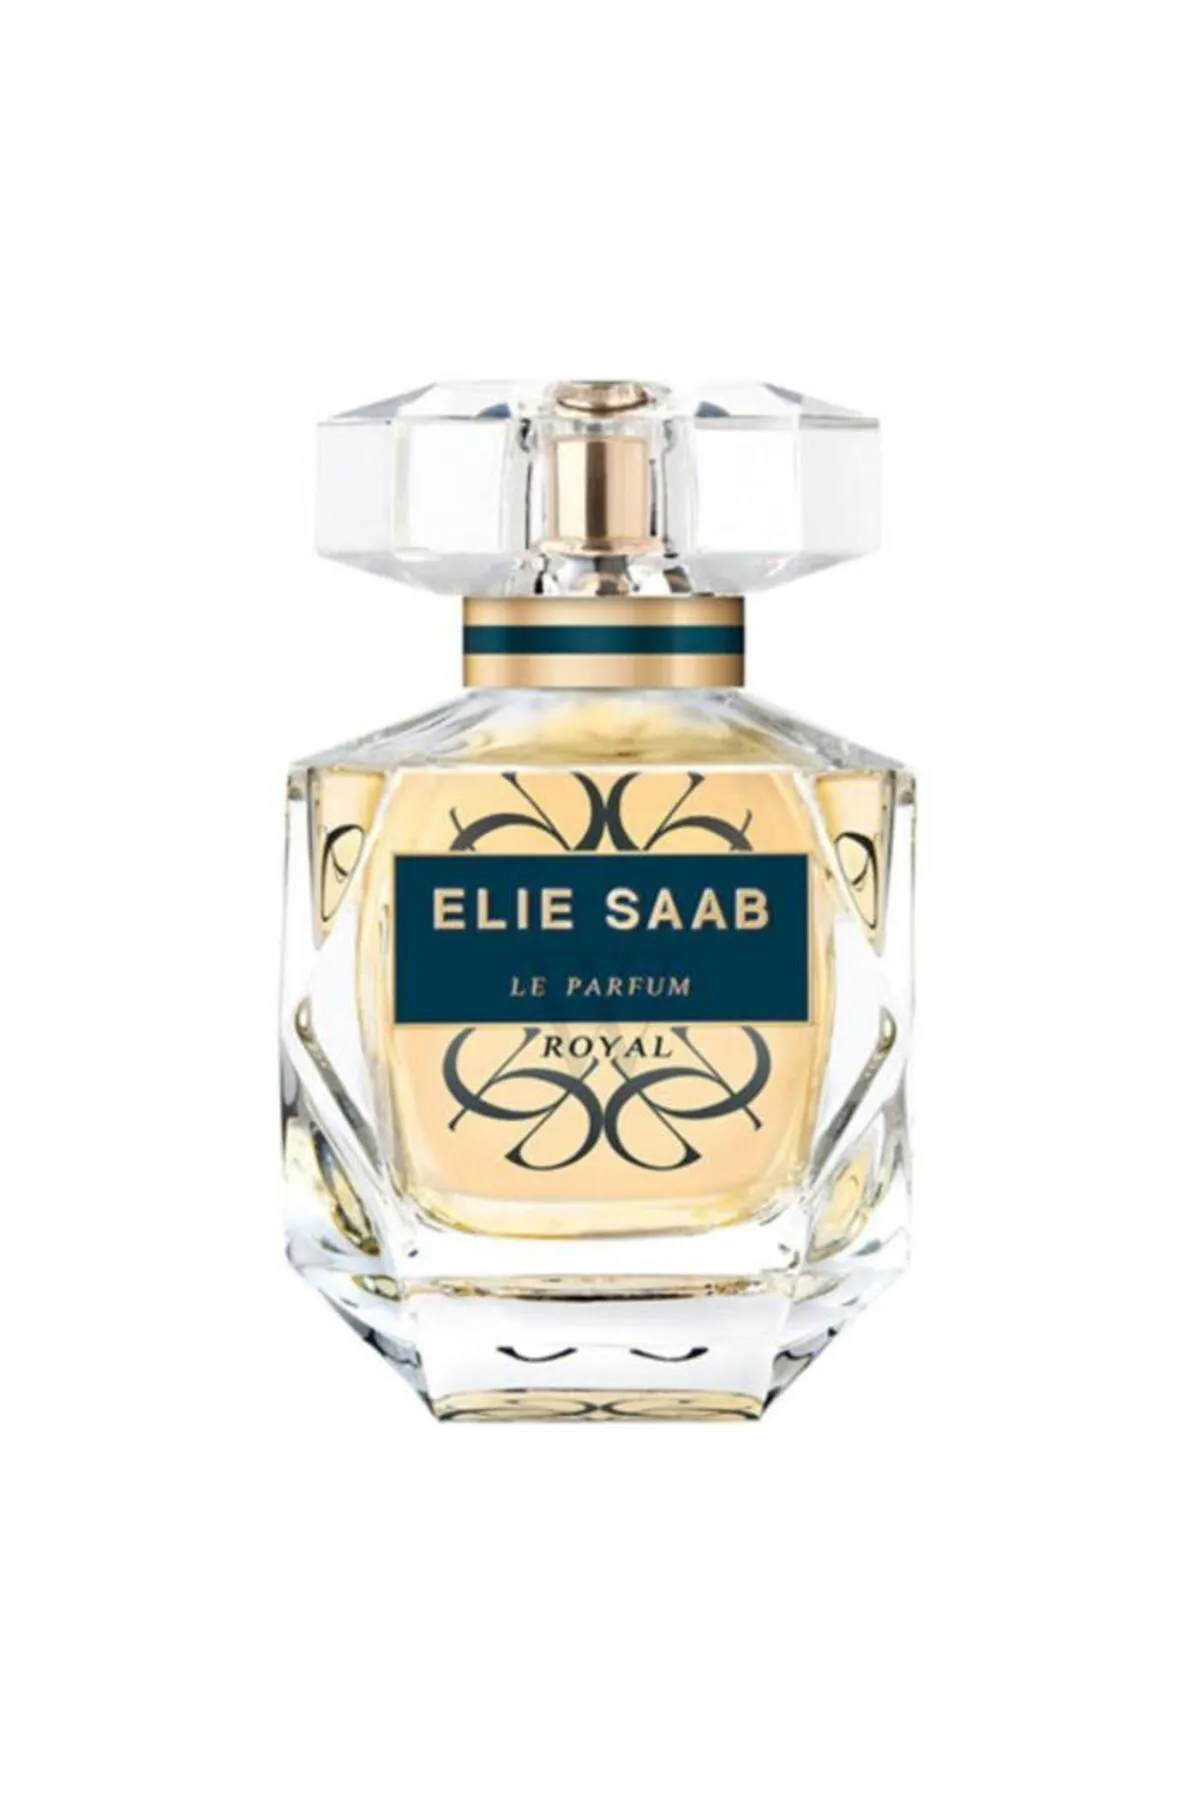 Elie Saab Le Parfum Royal Edp 90 ml - 2